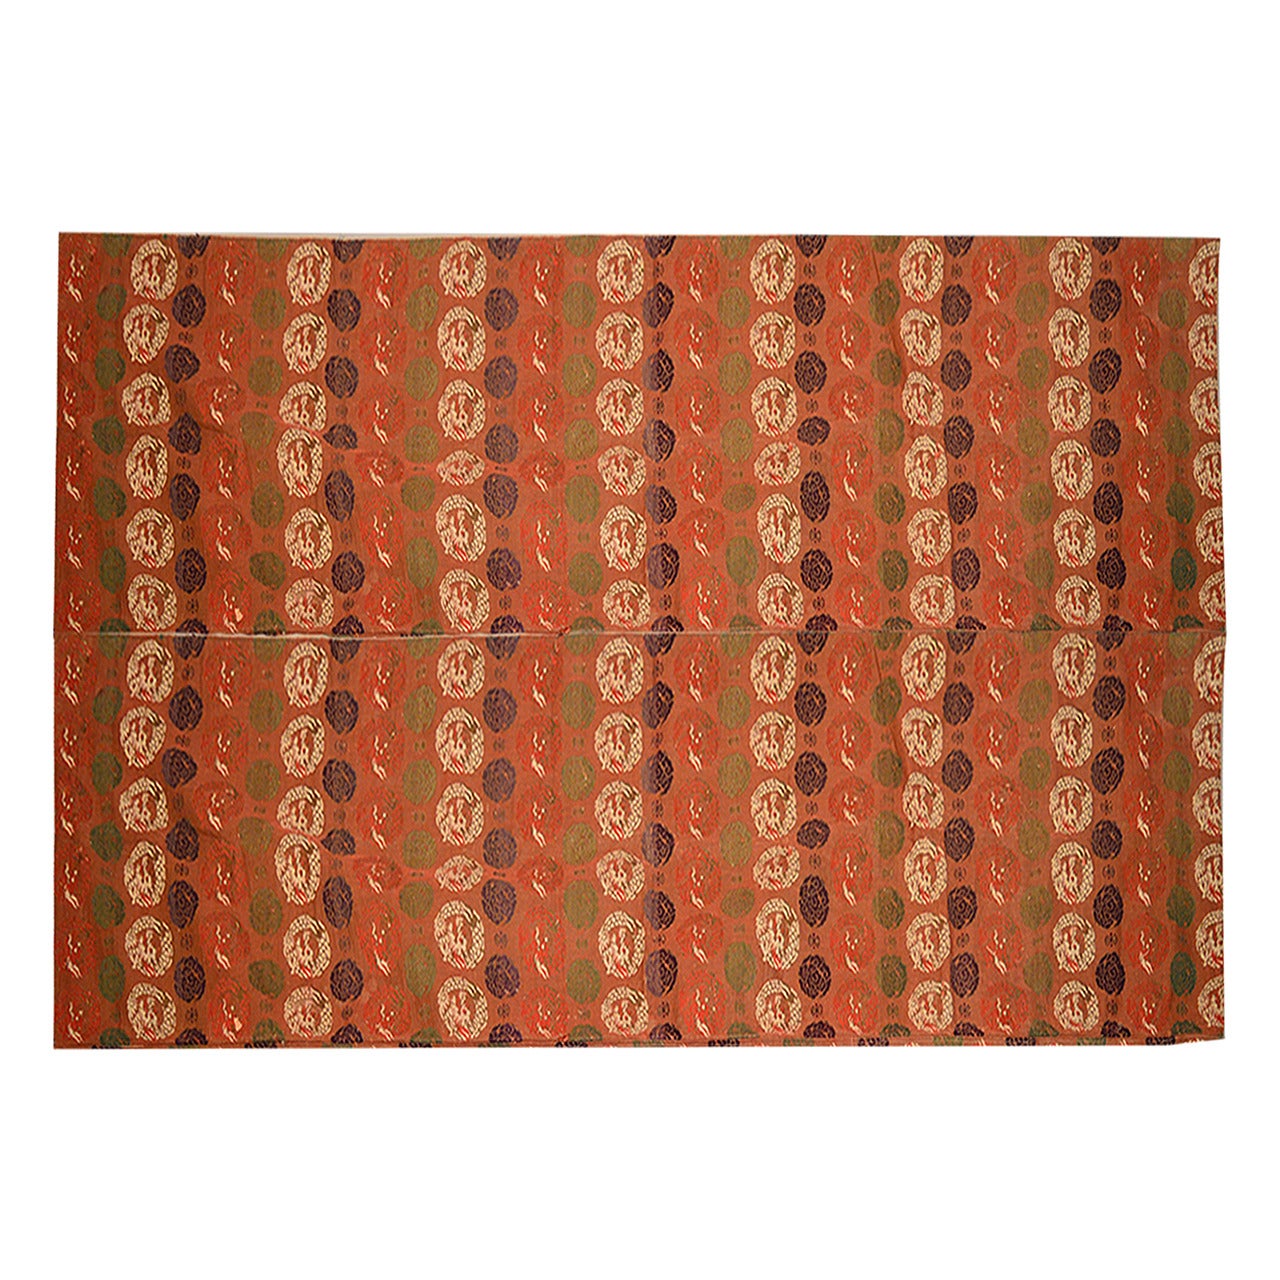 Large Japanese Kesa Textile, circa 1910